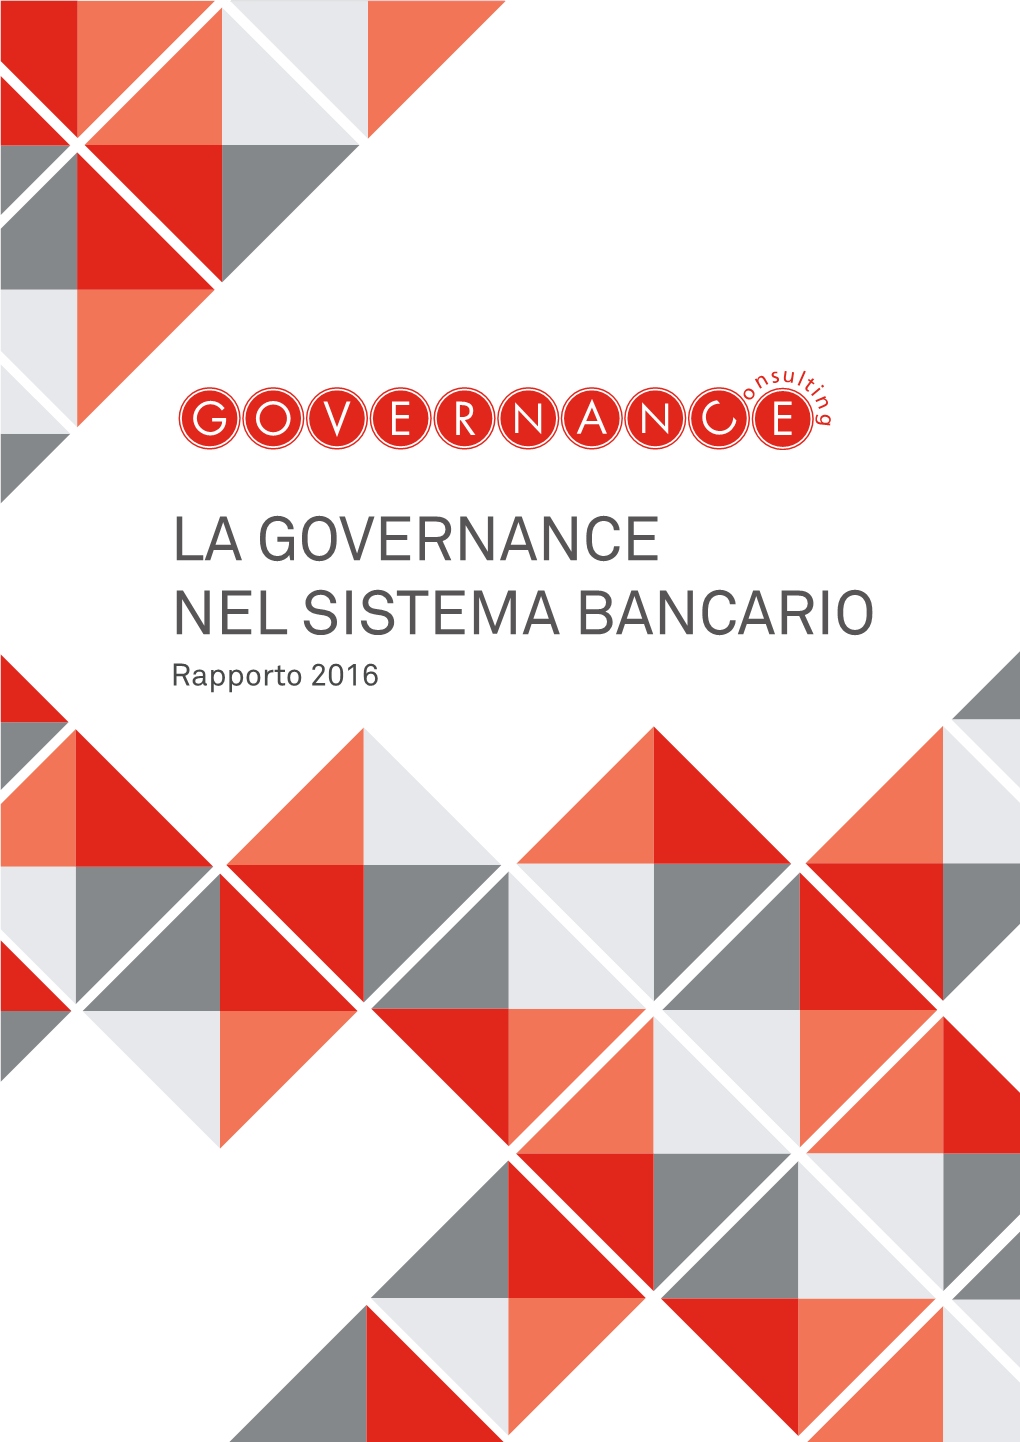 LA GOVERNANCE NEL SISTEMA BANCARIO Rapporto 2016